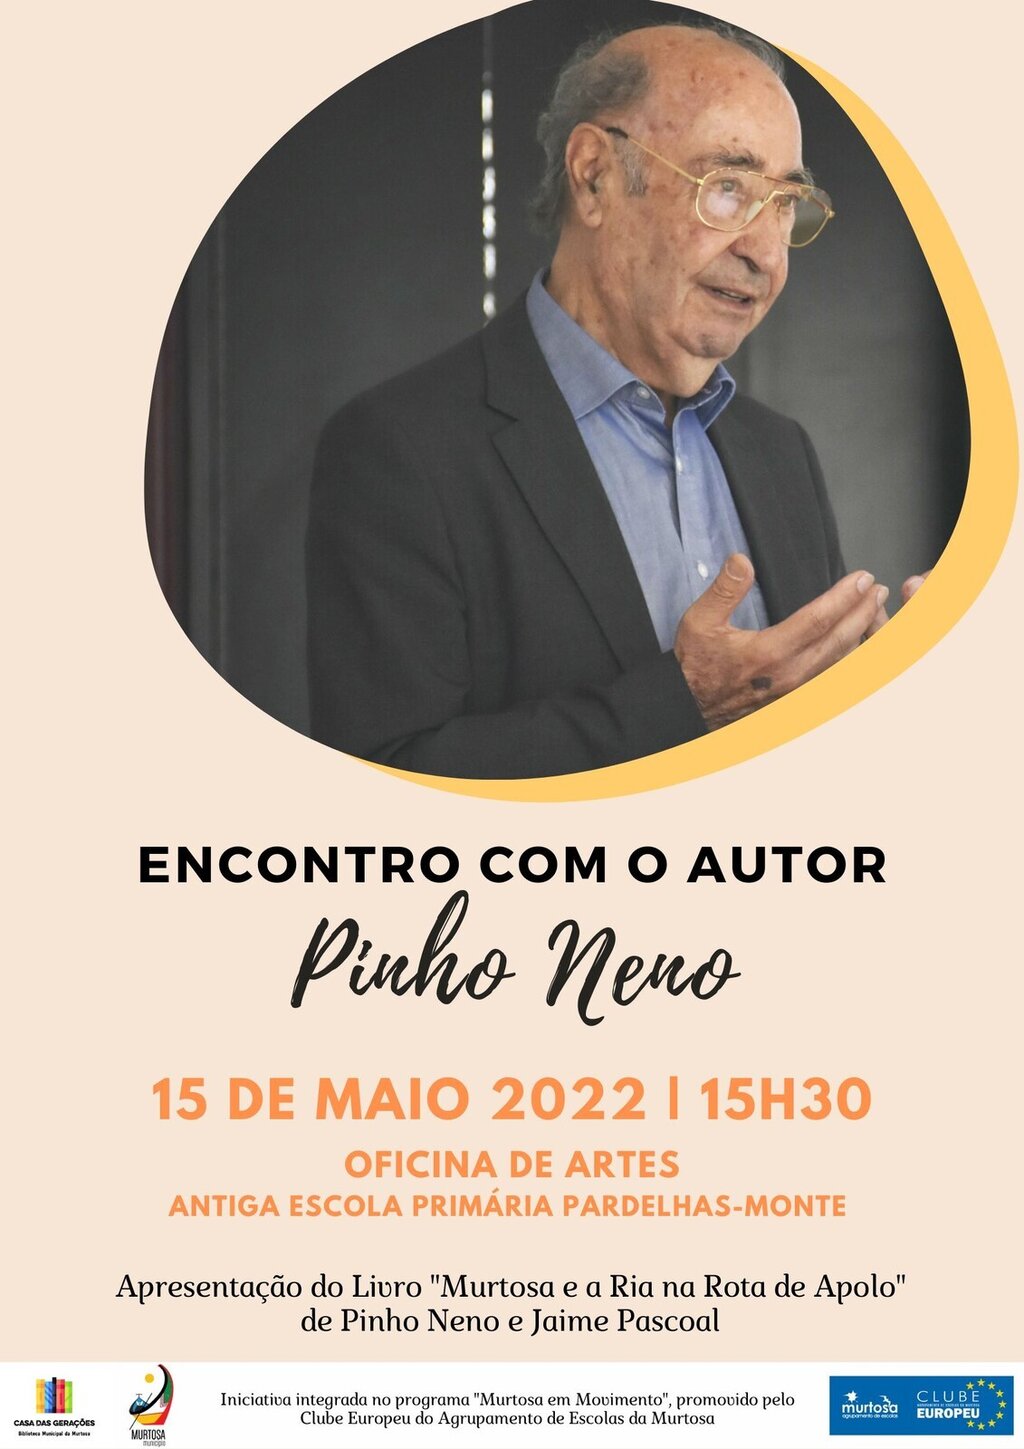 OFICINA DE ARTES RECEBE ENCONTRO COM O ESCRITOR PINHO NENO